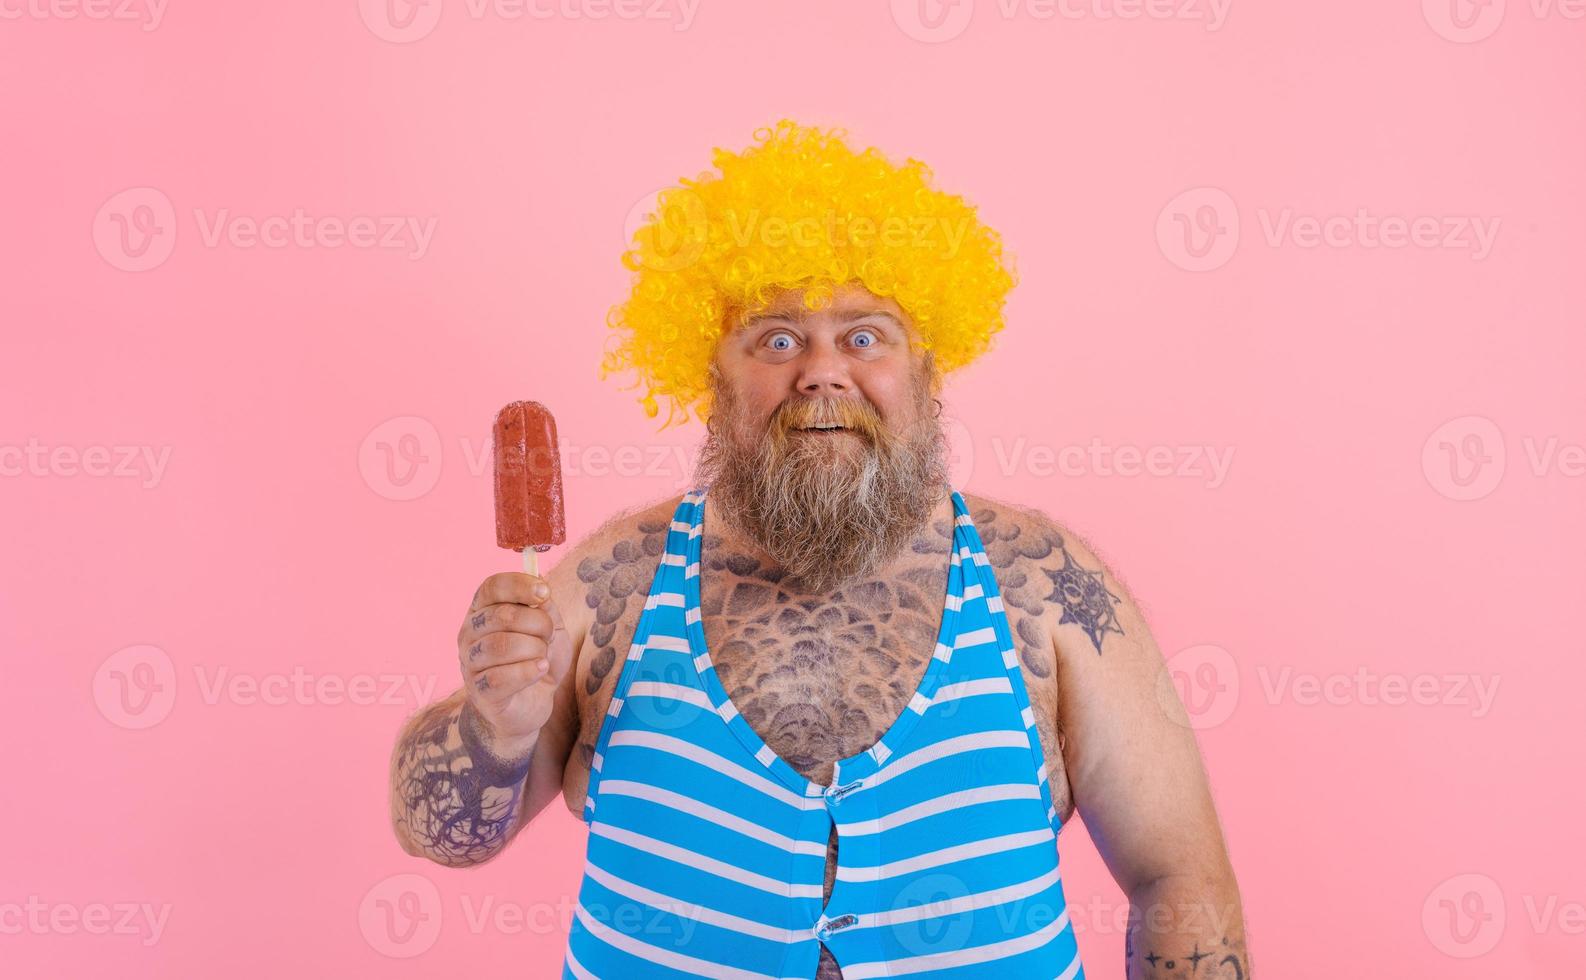 dik versteld staan Mens met baard en pruik eet een ijslolly foto